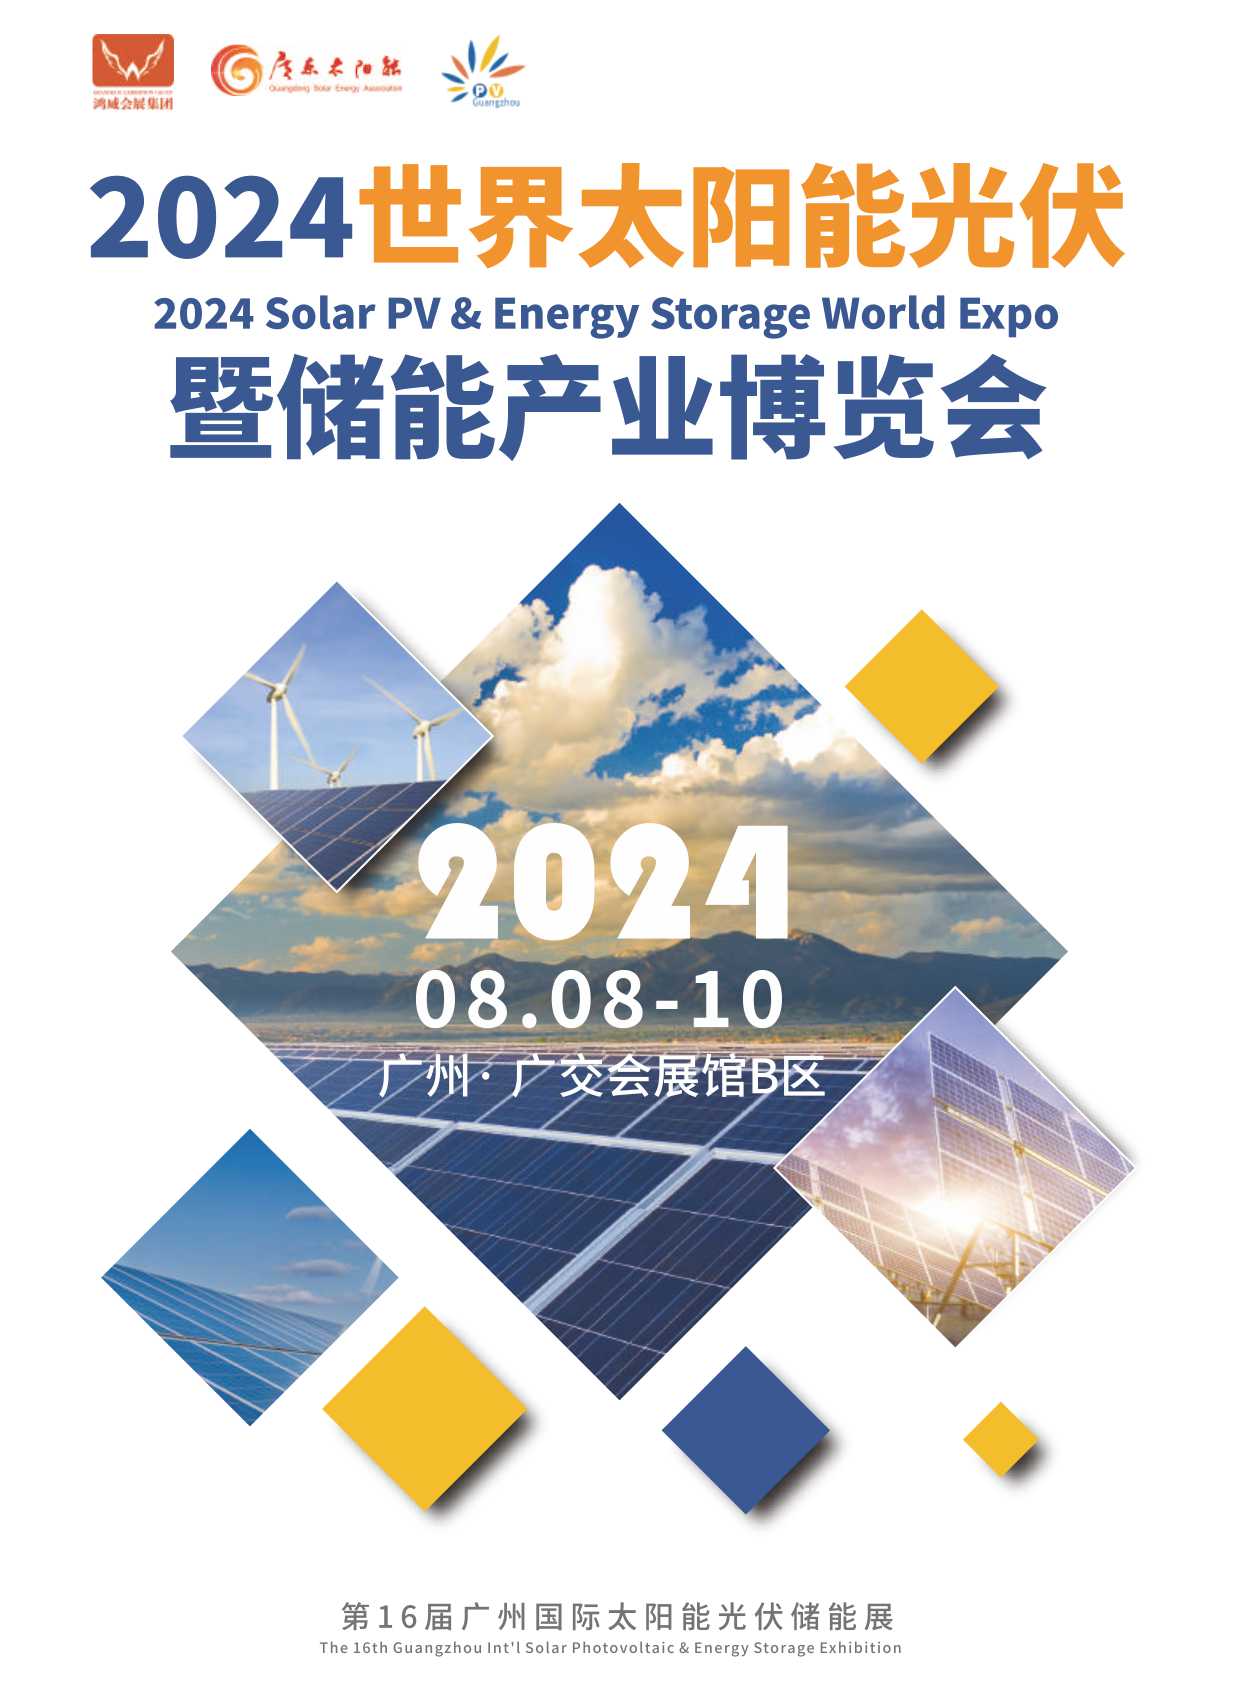 《2024世界太阳能光伏暨储能产业博览会》电子样本画册